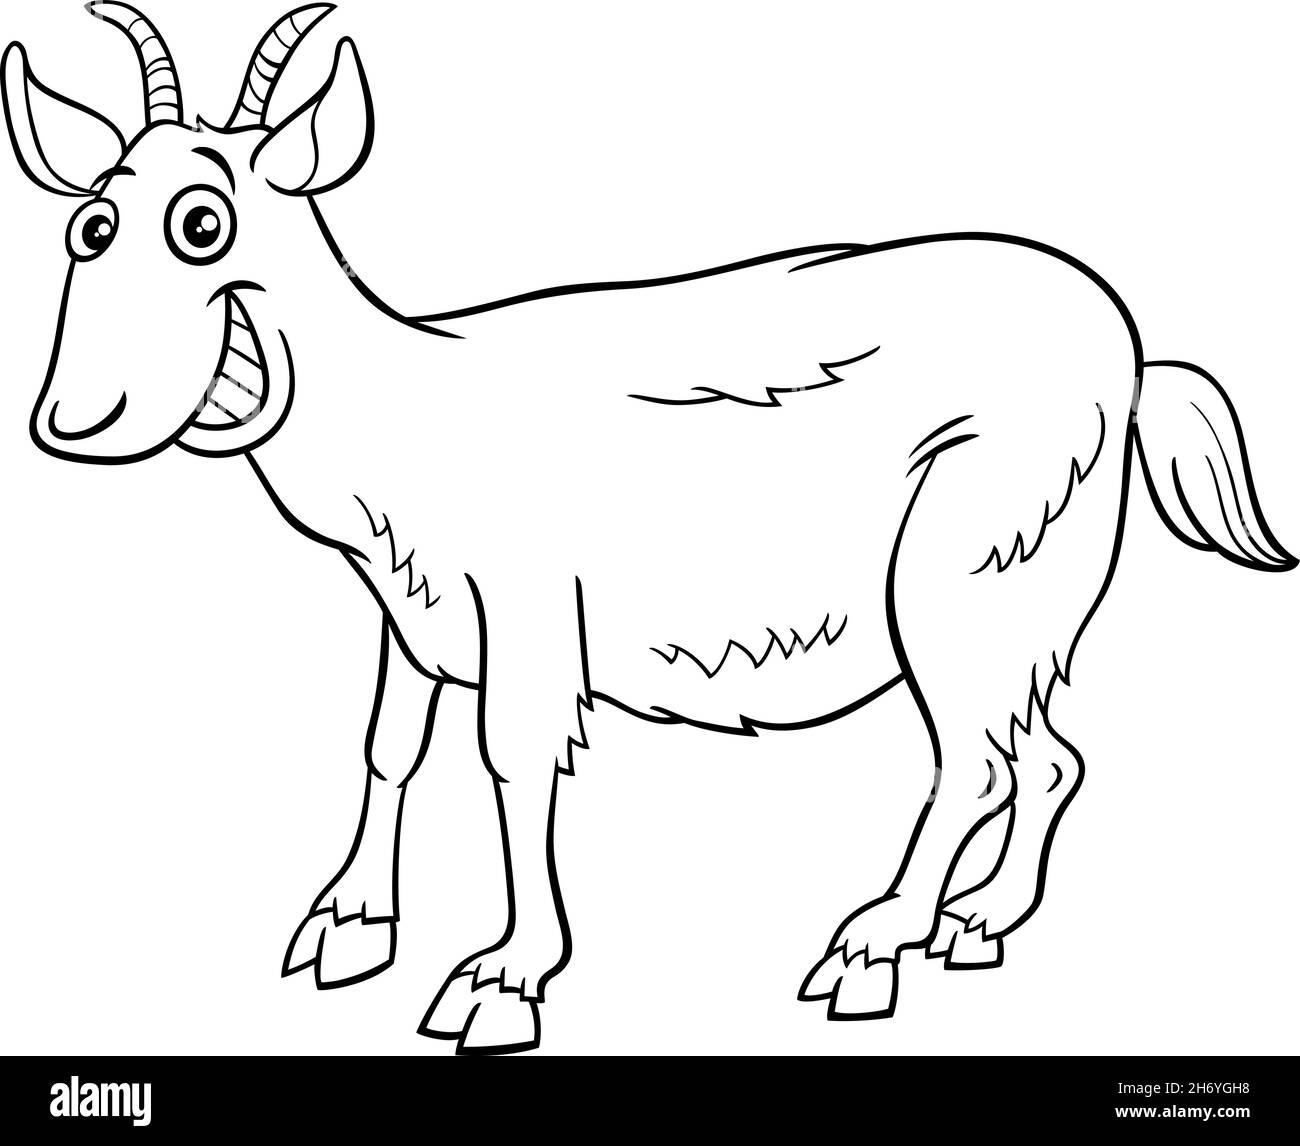 Dessin animé noir et blanc illustration de la ferme de chèvre drôle animal caractère coloriage page livre Illustration de Vecteur